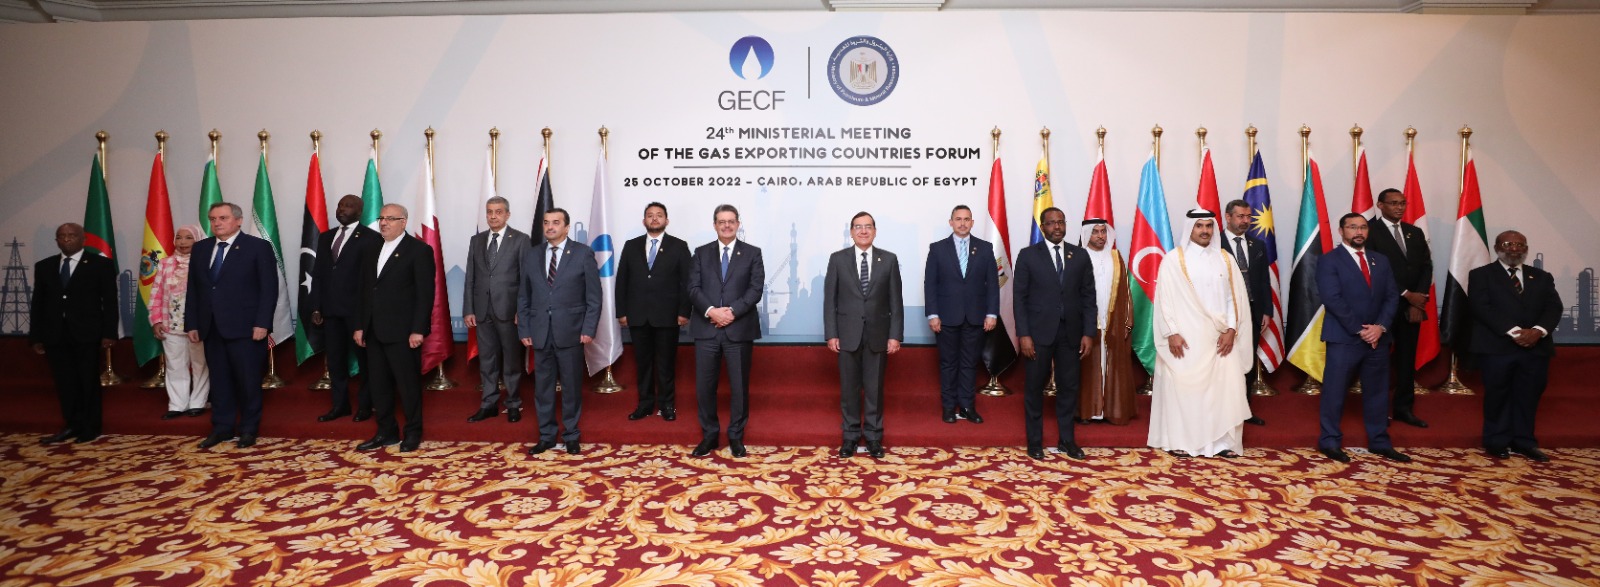 GECF Meeting Cairo